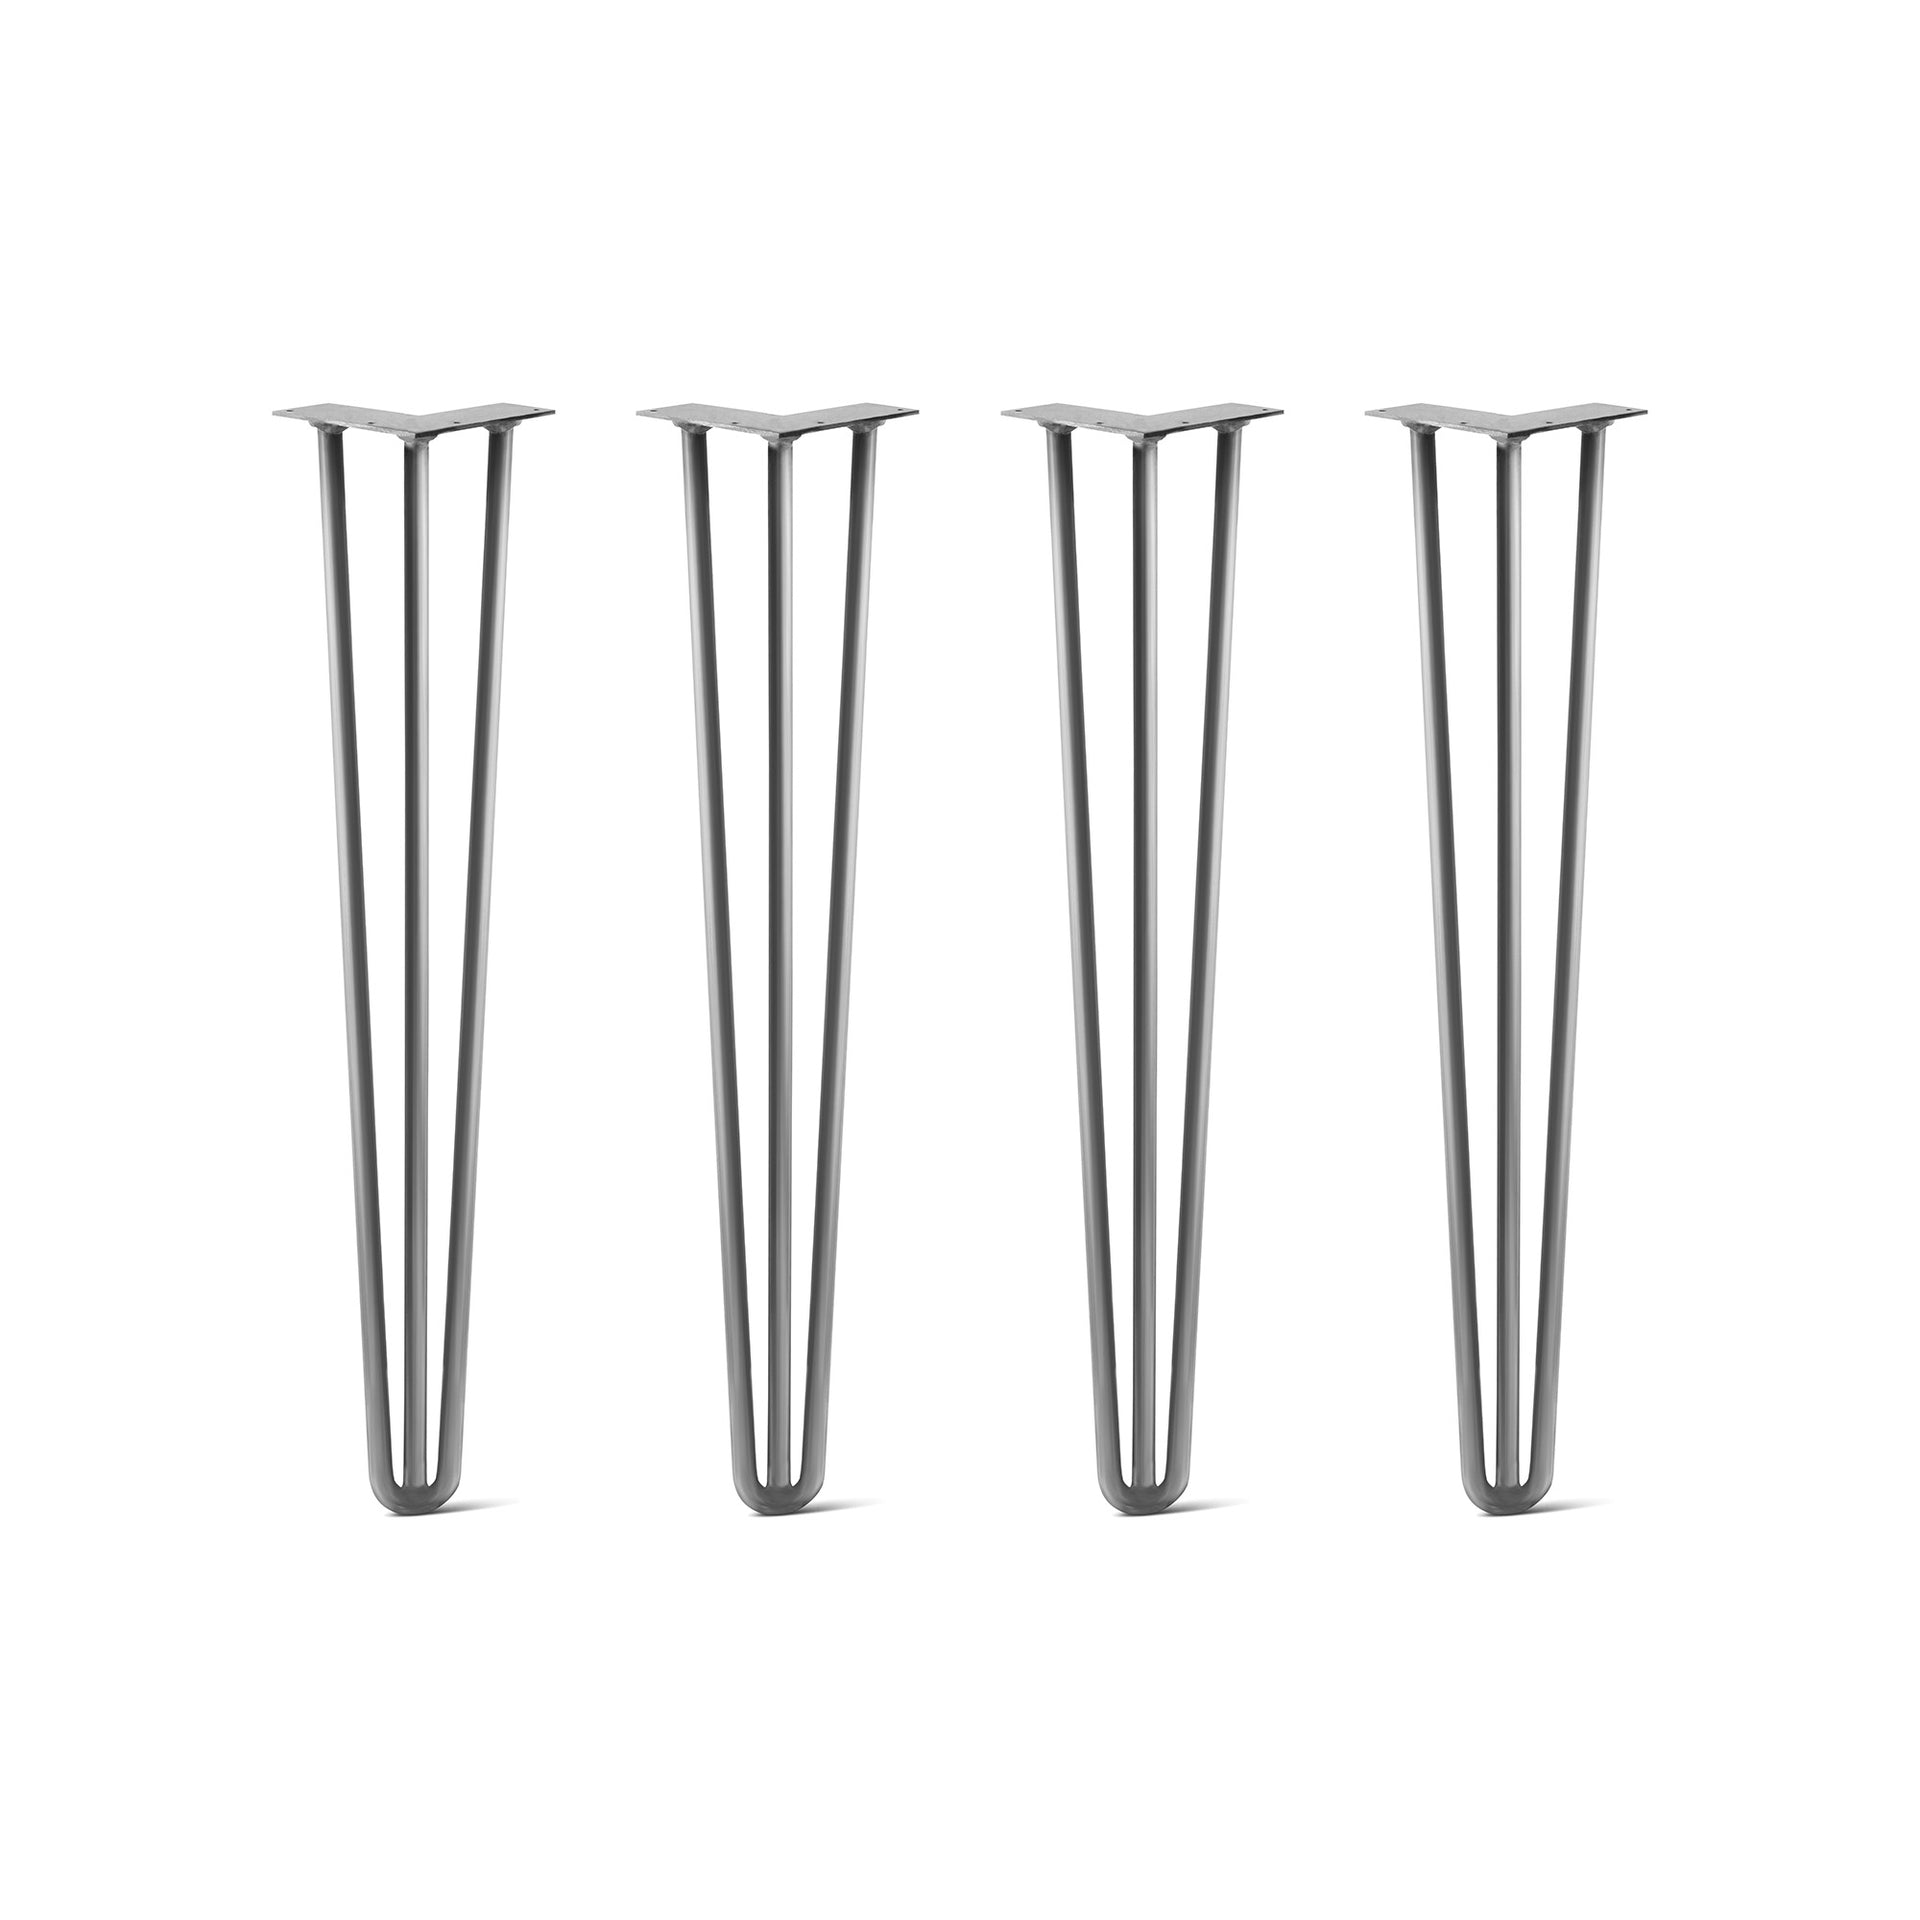 Hairpin Legs - Set of 4 - 3 rod design